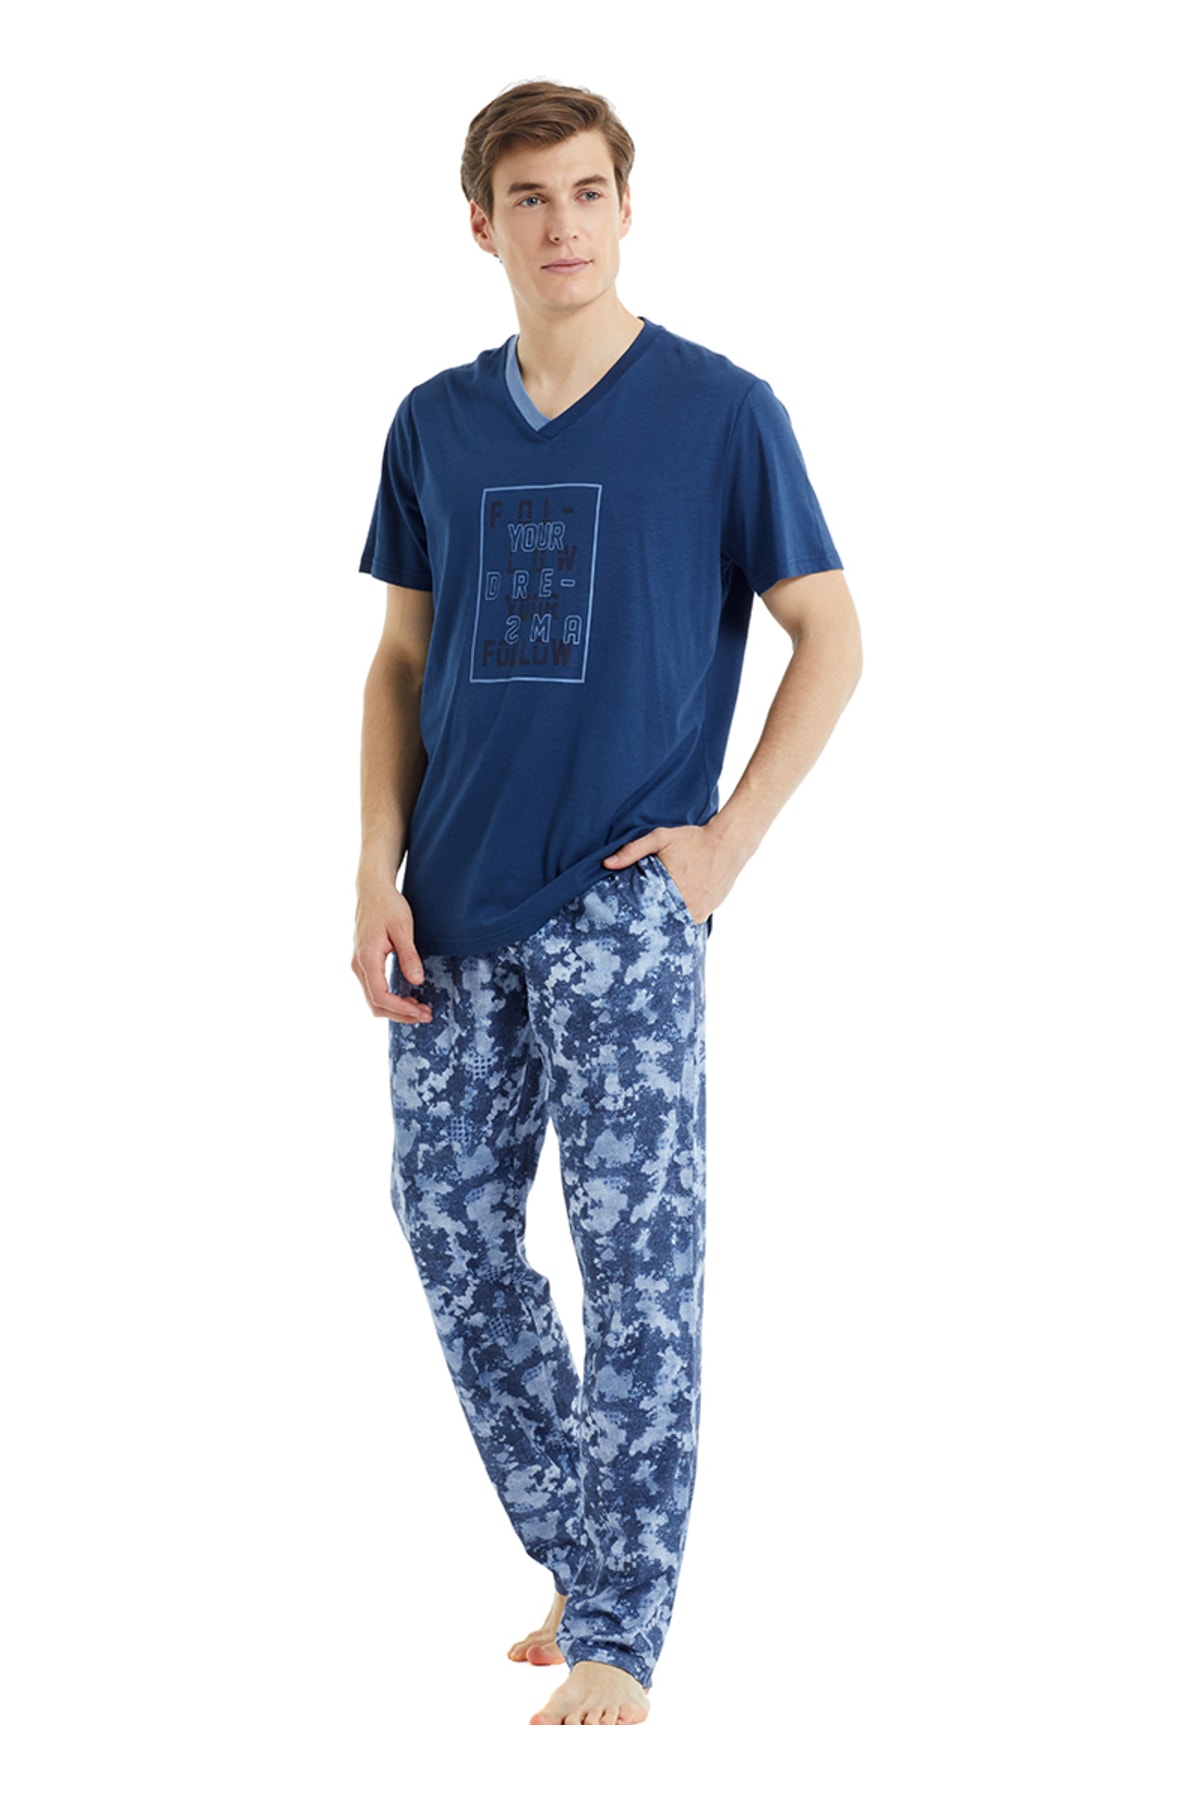 Blackspade Erkek Pijama Takımı 30827 - Mavi